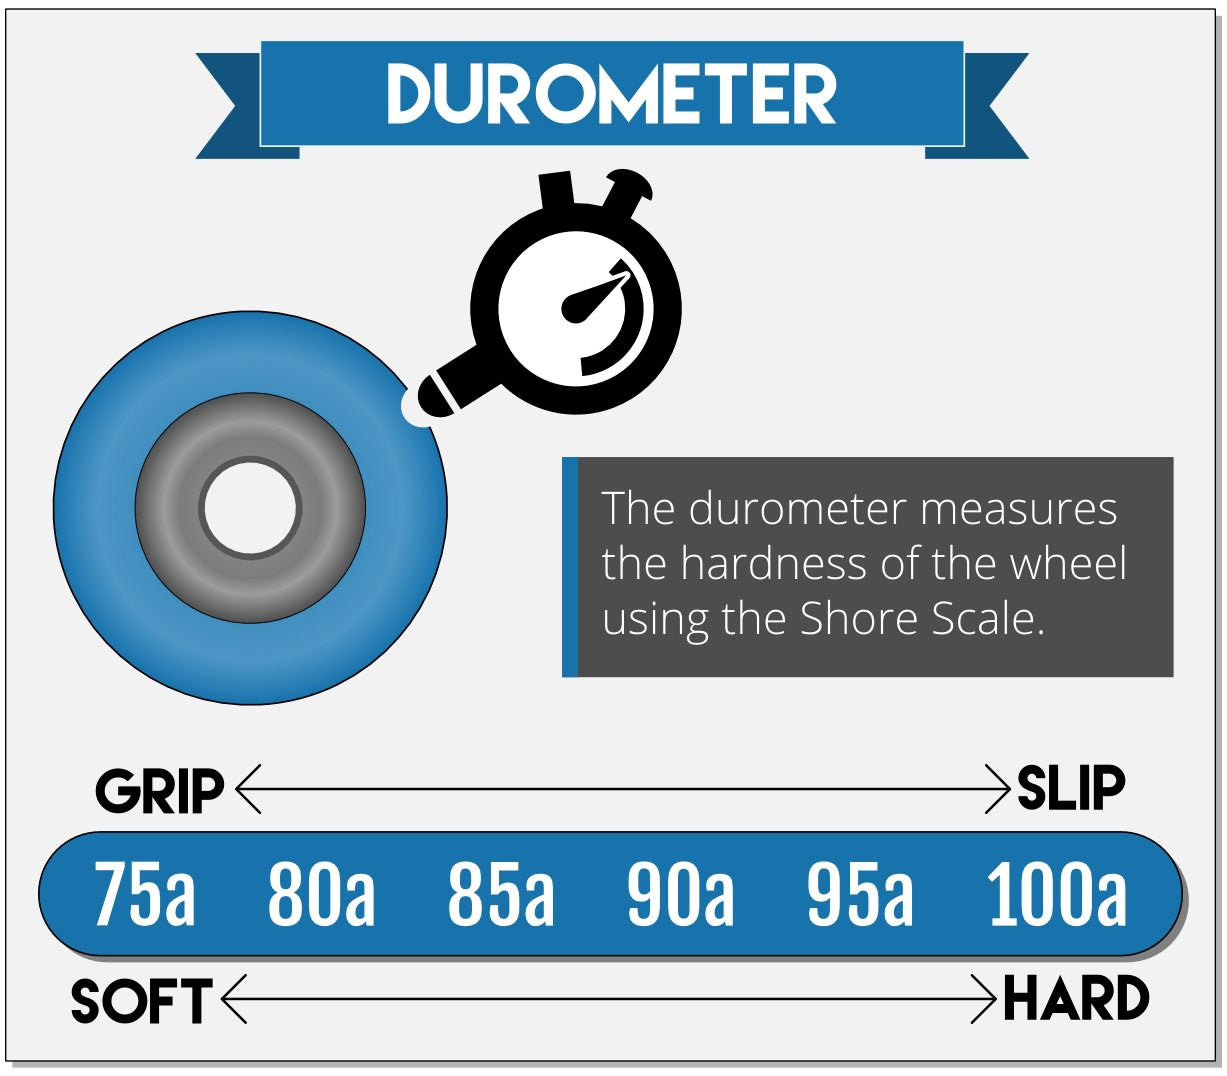 Skateboard wheel durometer explained